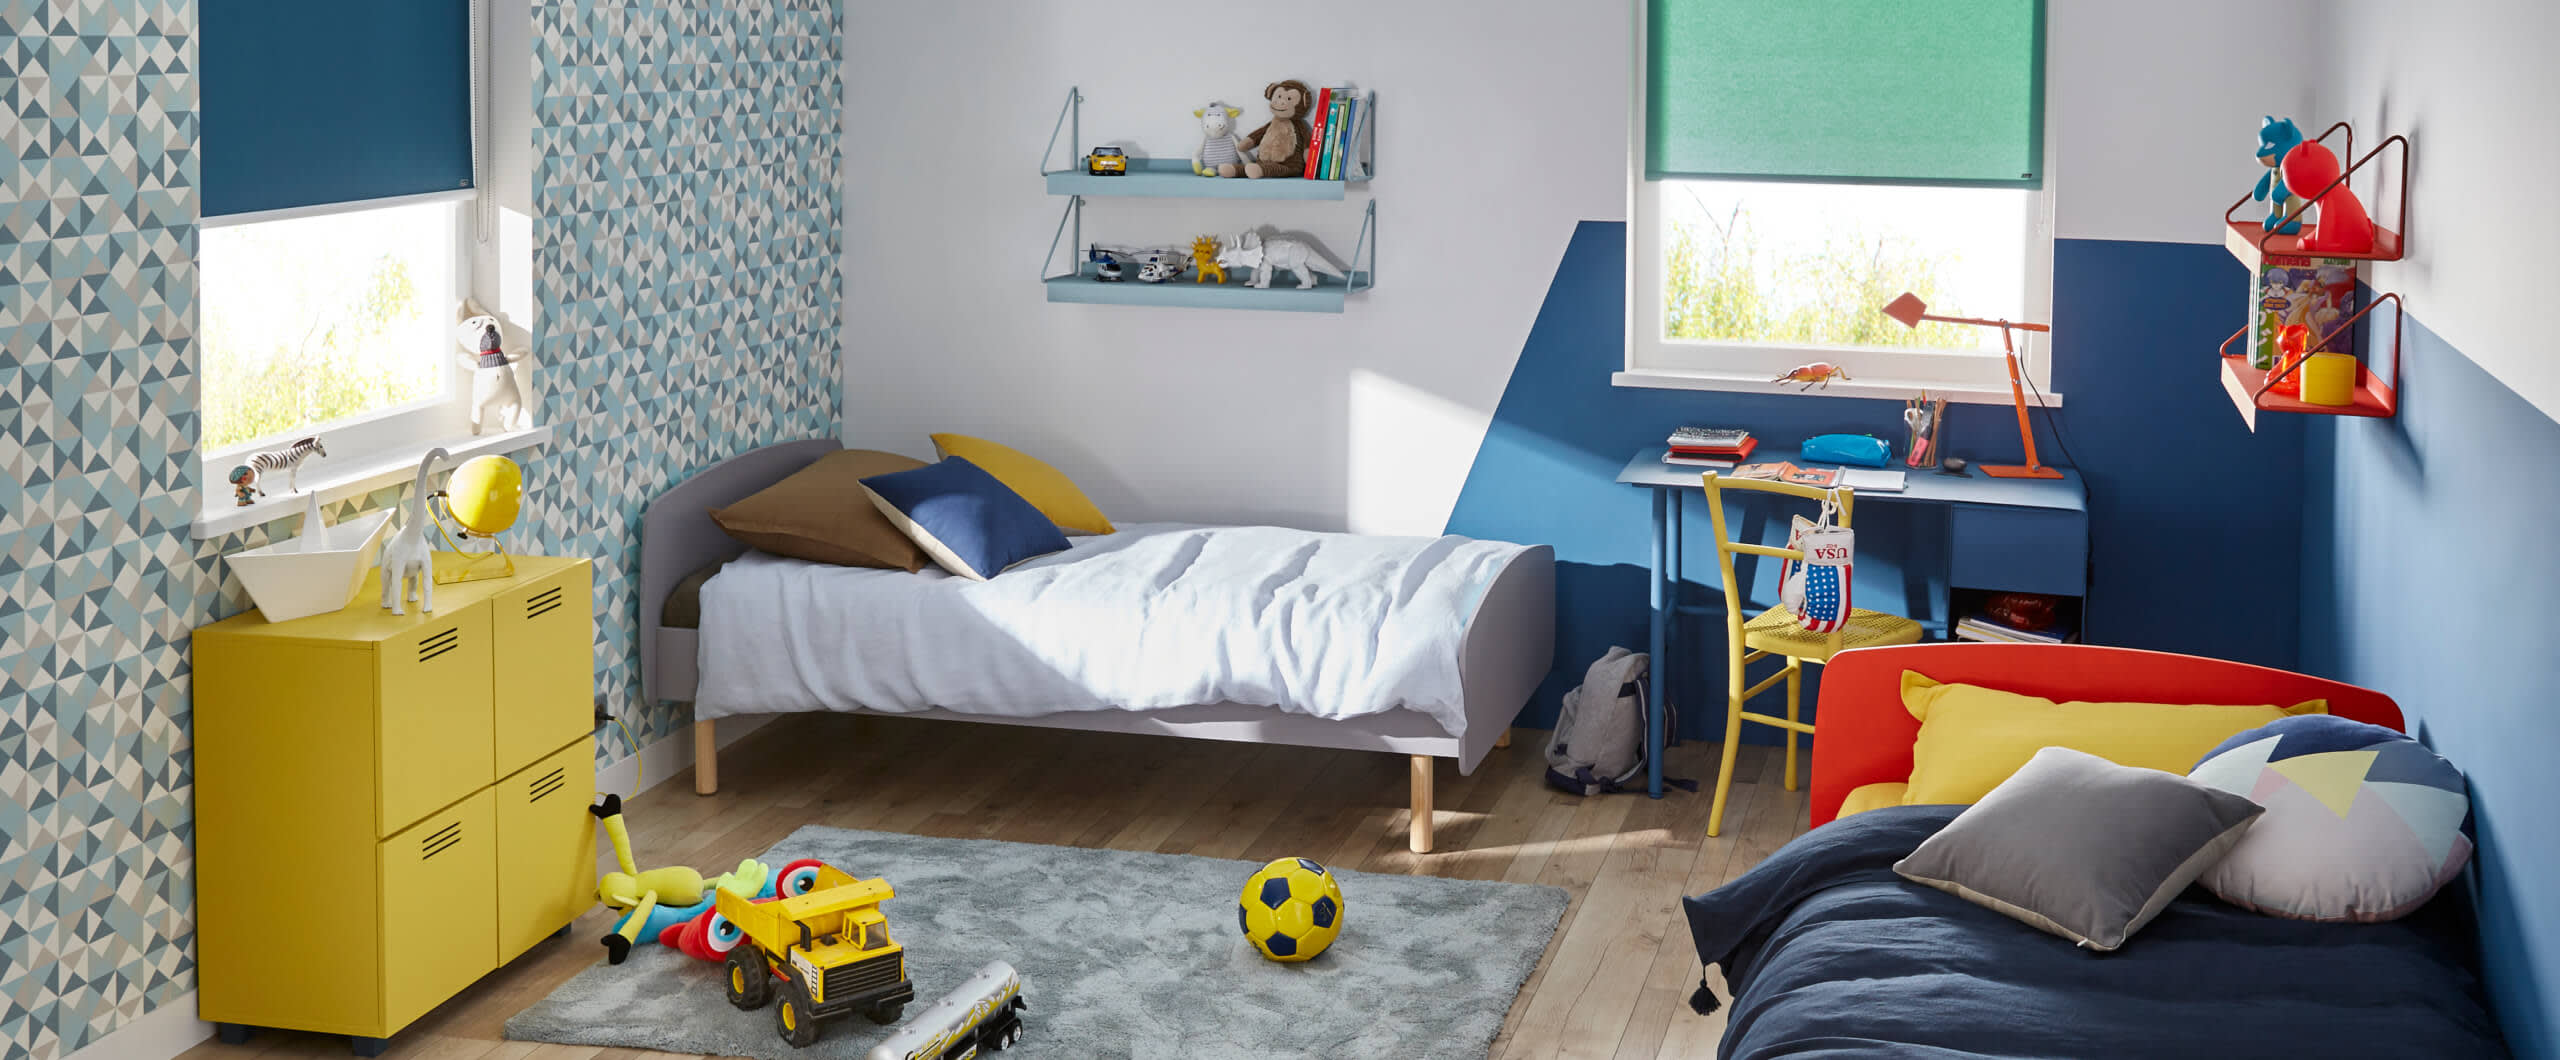 Optimiser une chambre pour 2 enfants : Saint Maclou | Saint Maclou